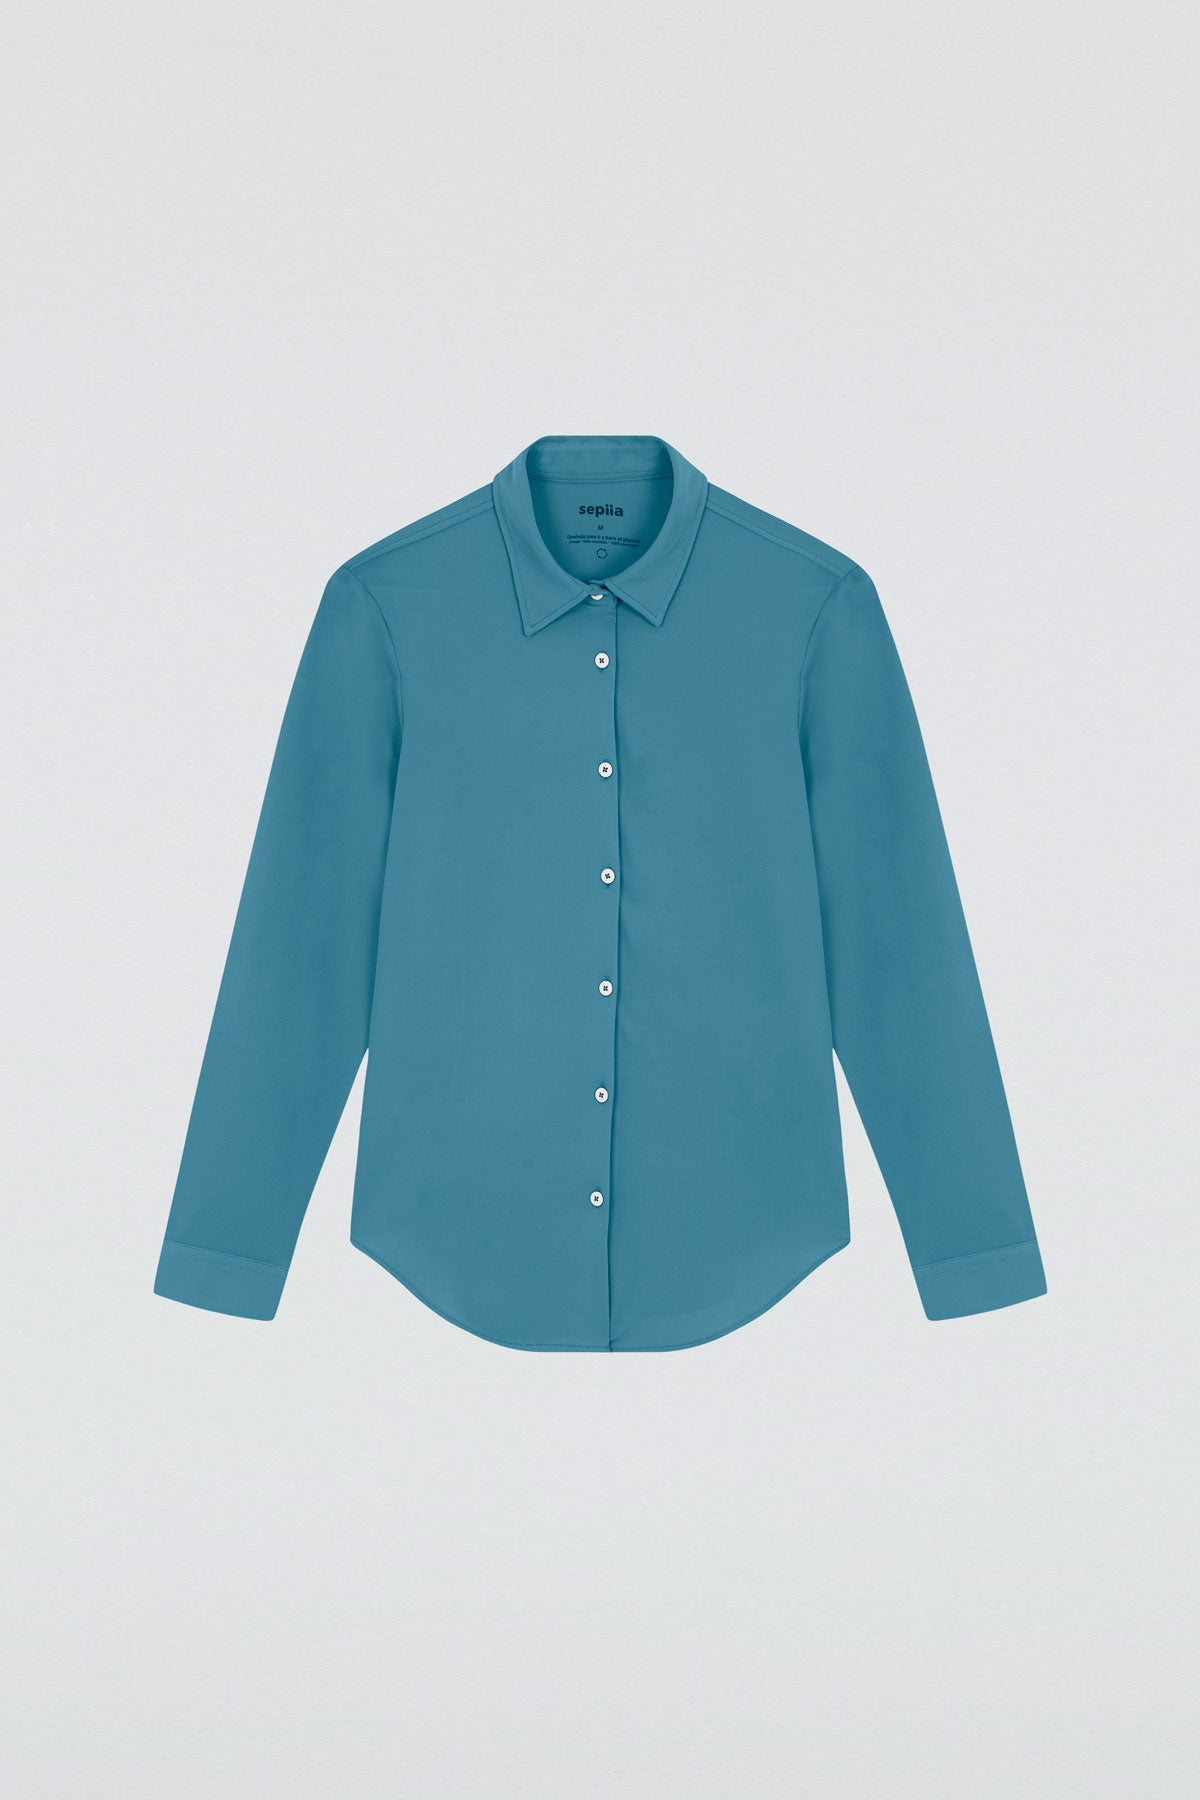 Camisa para mujer slim color azul neptuno, básica y versátil. Foto plano